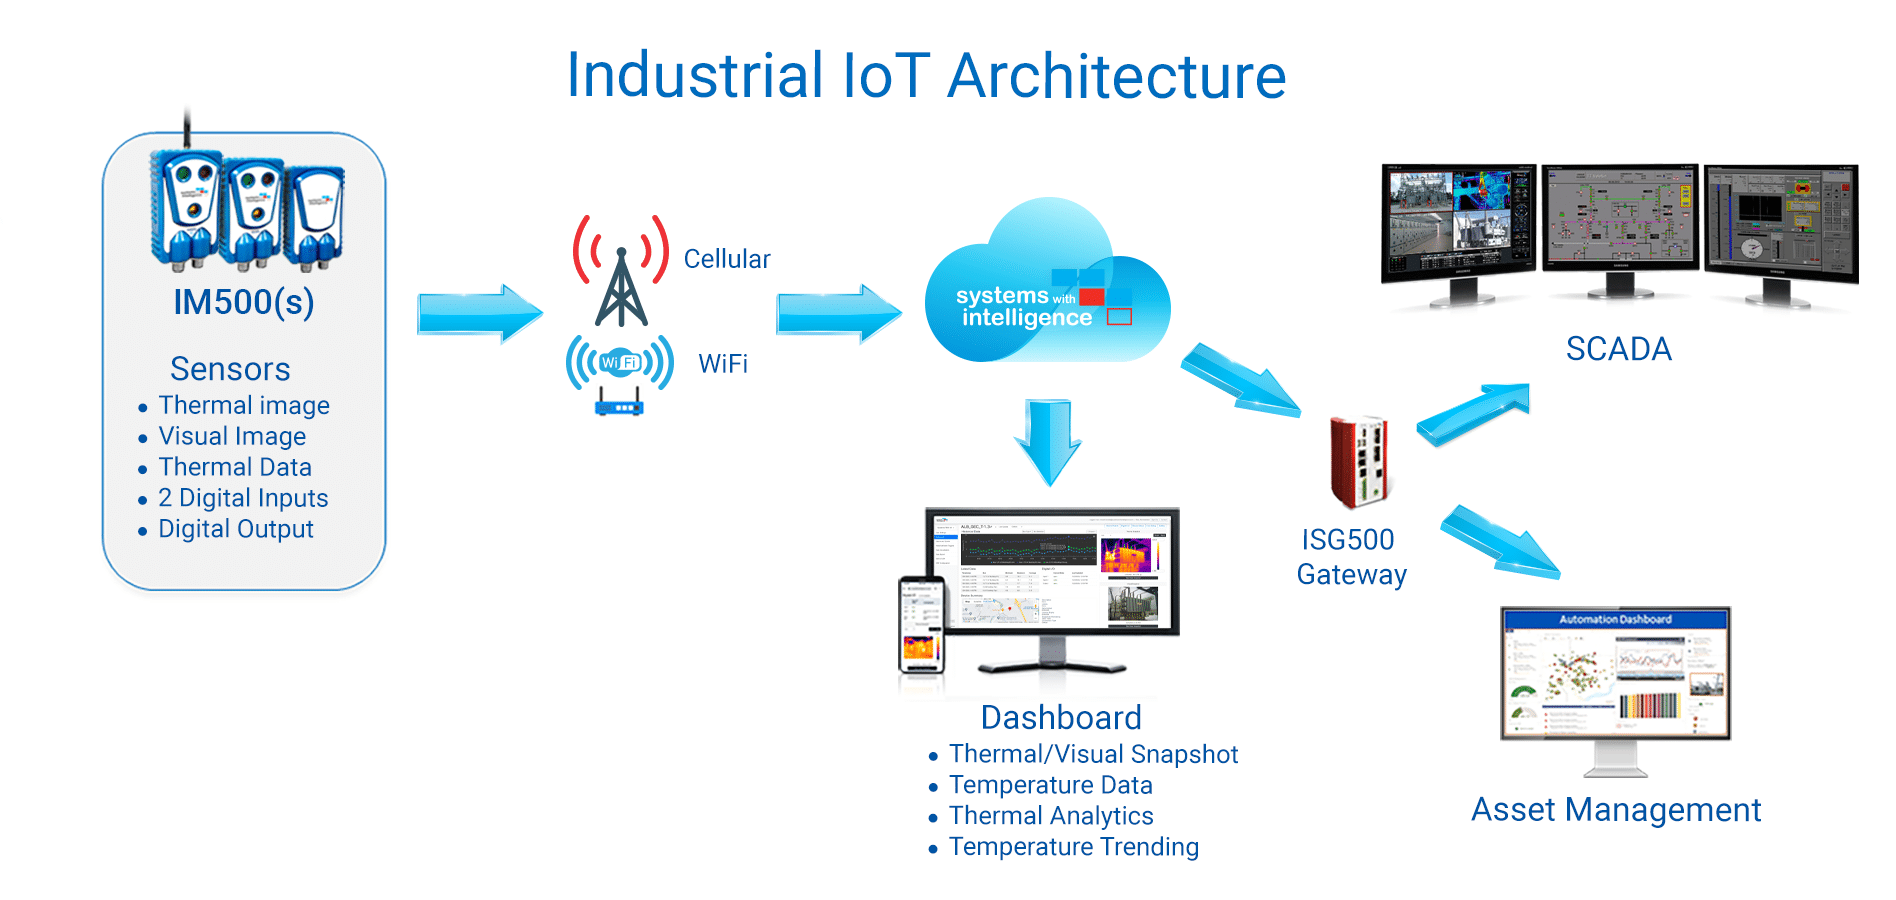 IM500 Industrial IoT Architecture